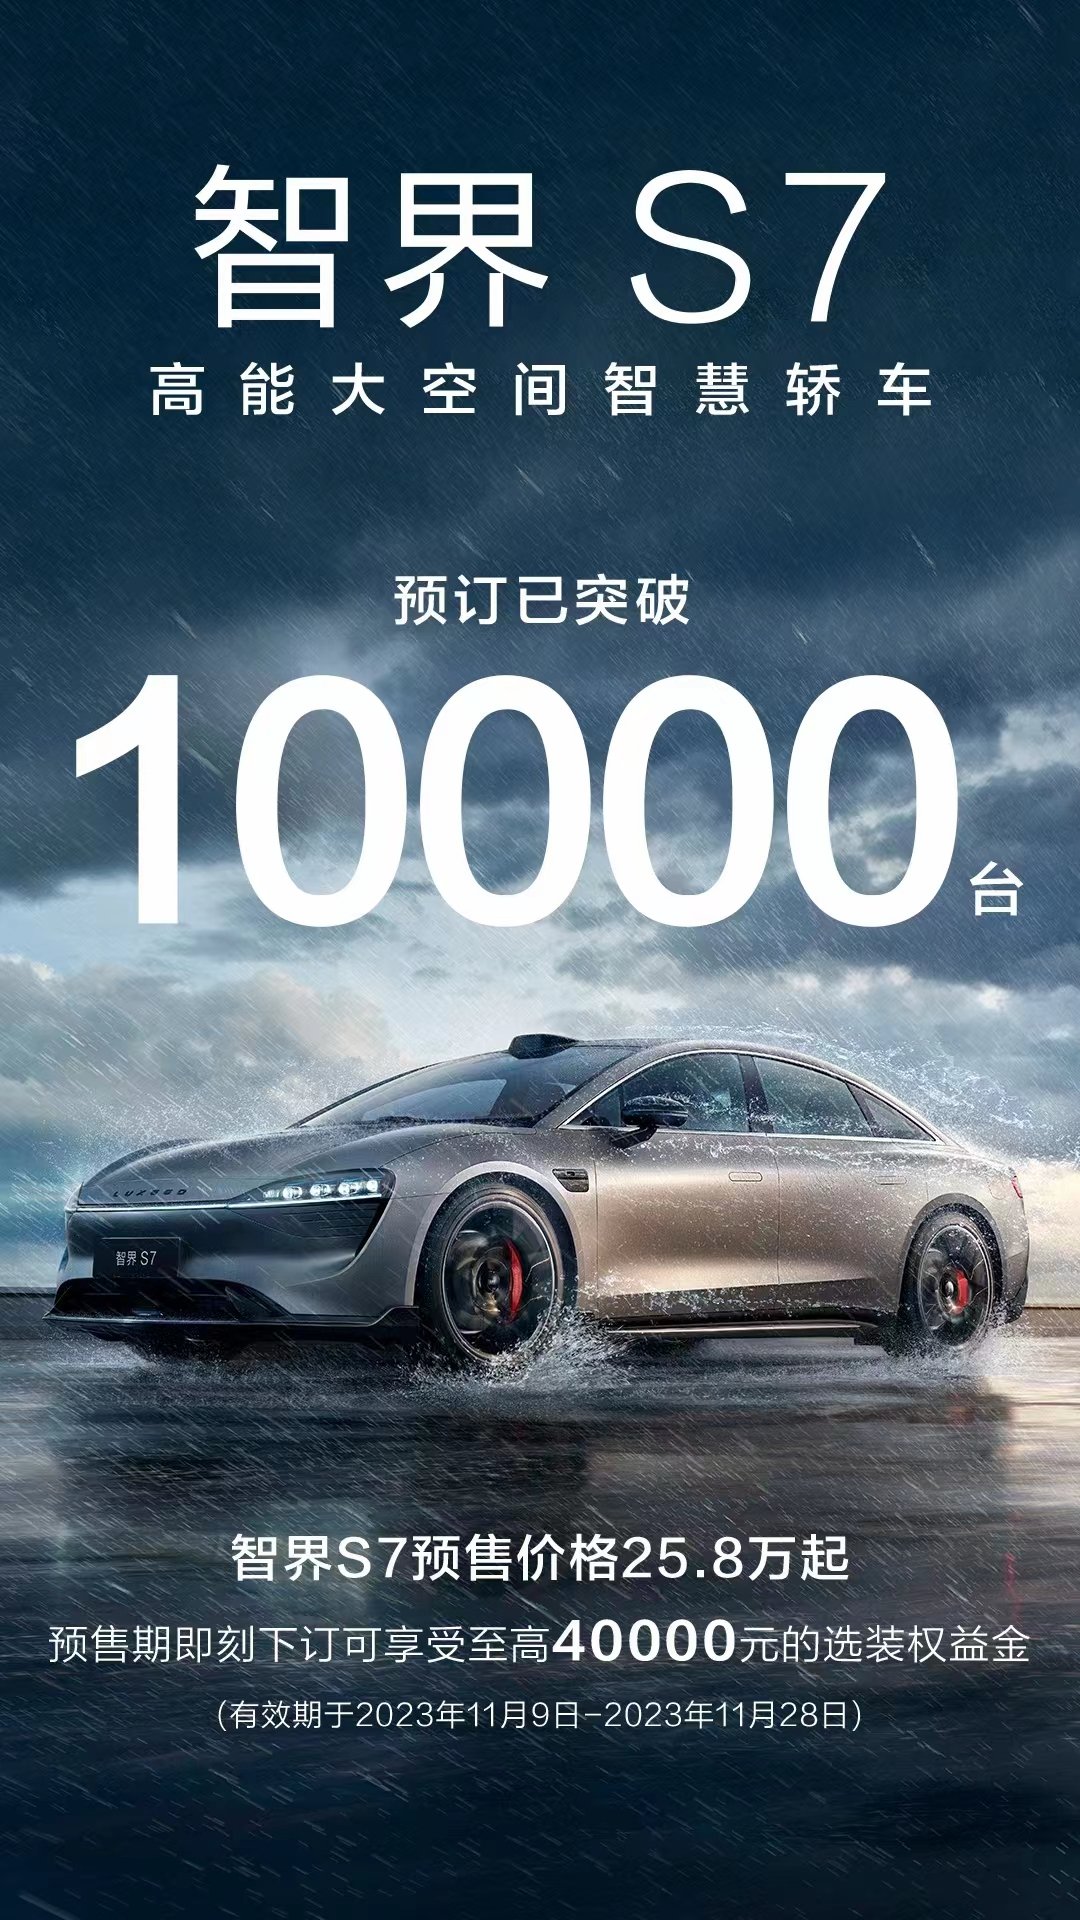 华为智选车首款轿车「智界S7」预订量突破1万辆